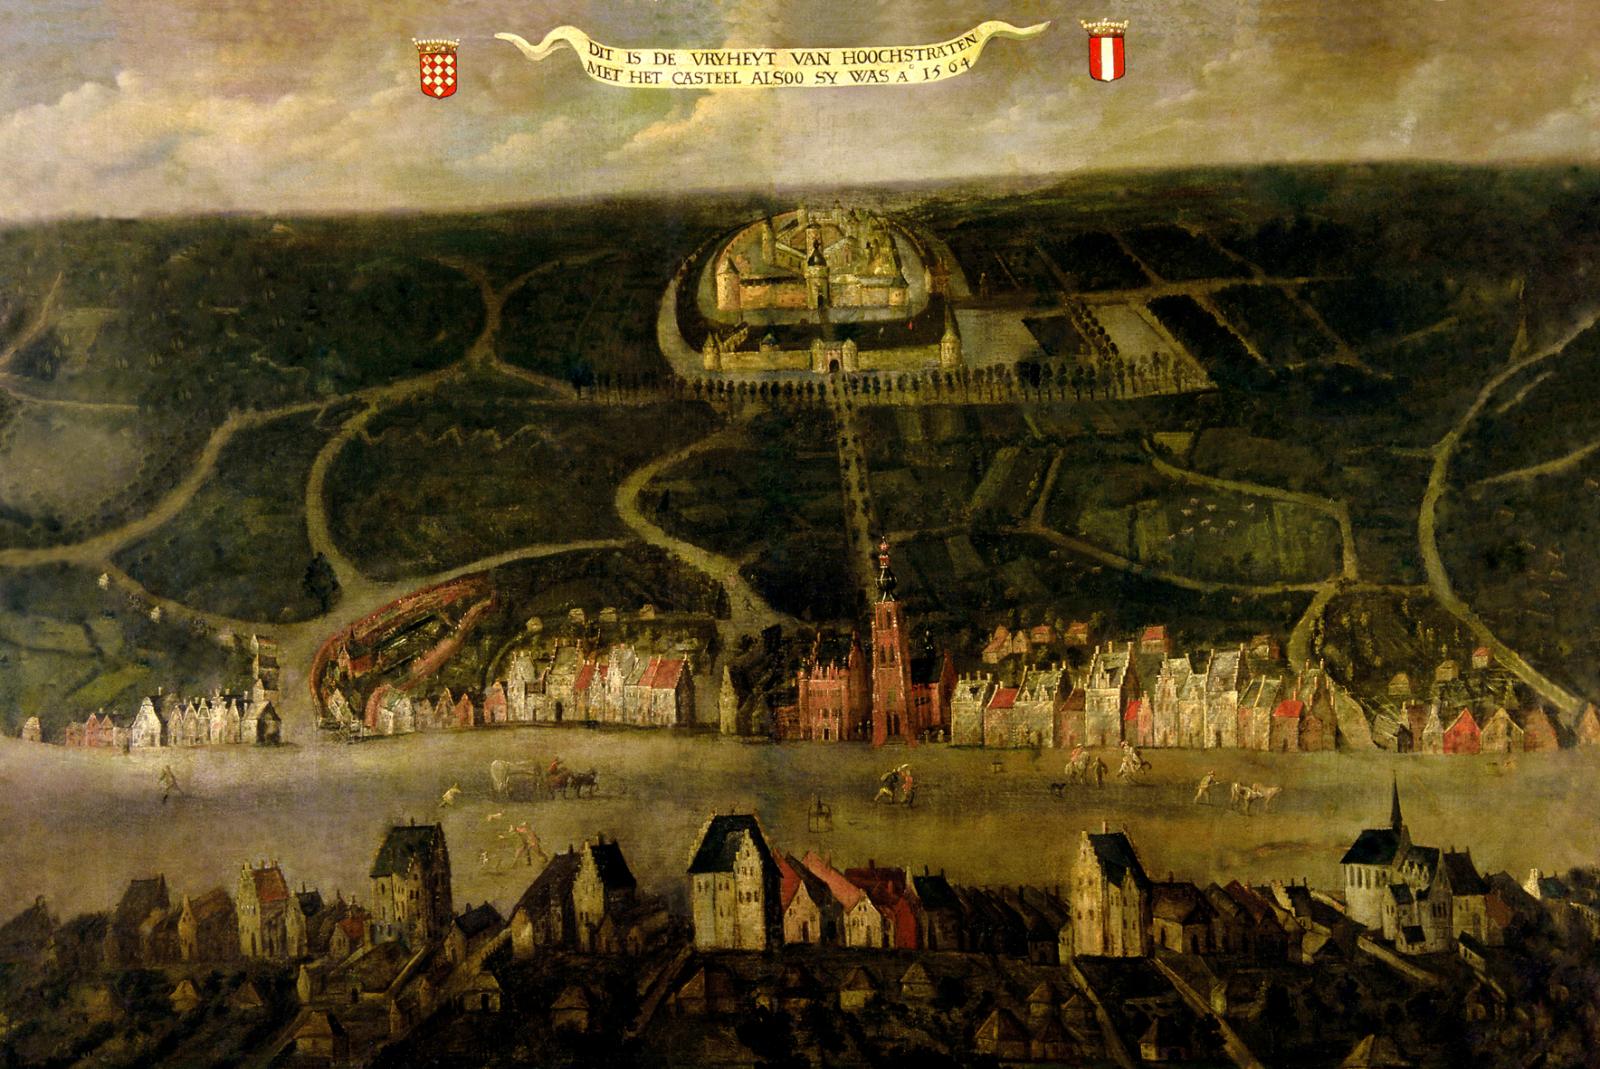 De Vrijheid van Hoogstraten in 1564